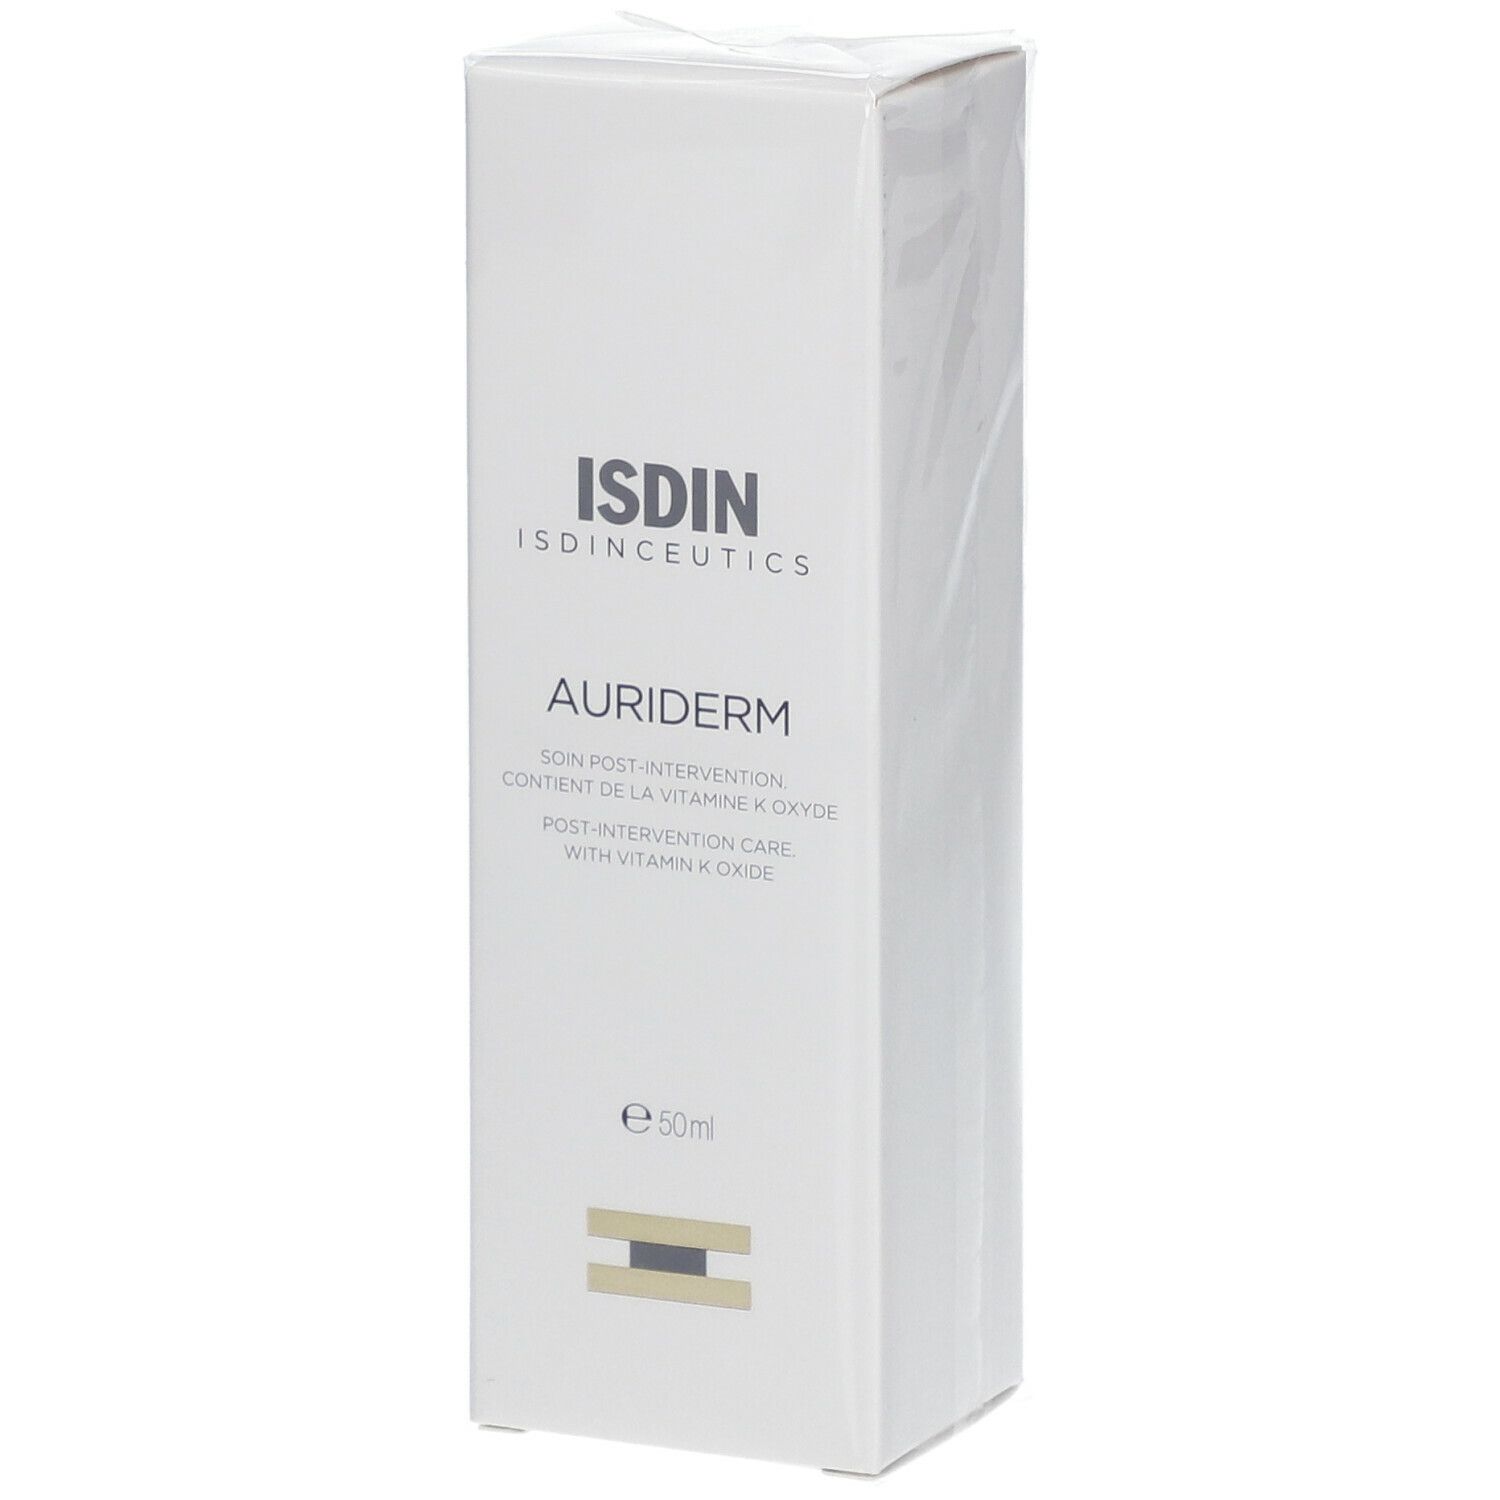 ISDIN Isdinceutics Auriderm